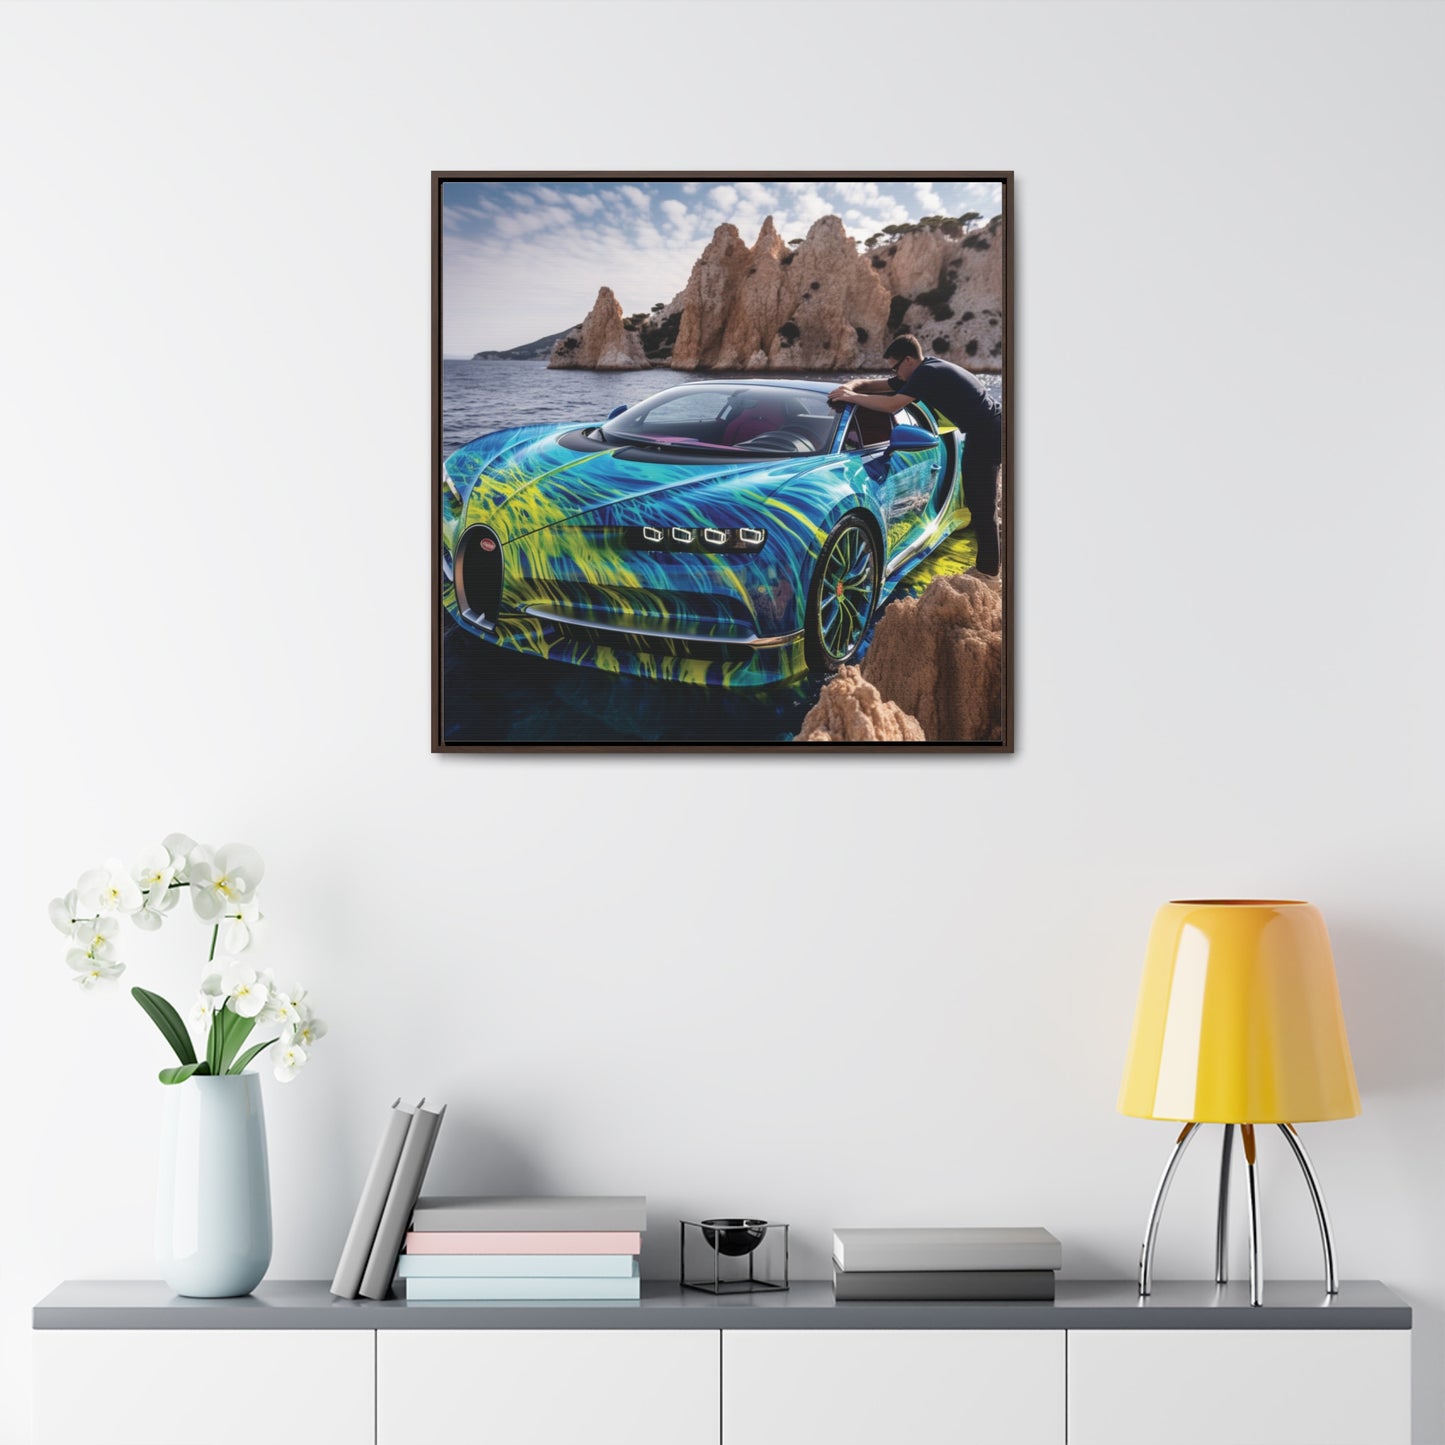 Gallery Canvas Wraps, Square Frame Bugatti Water 1